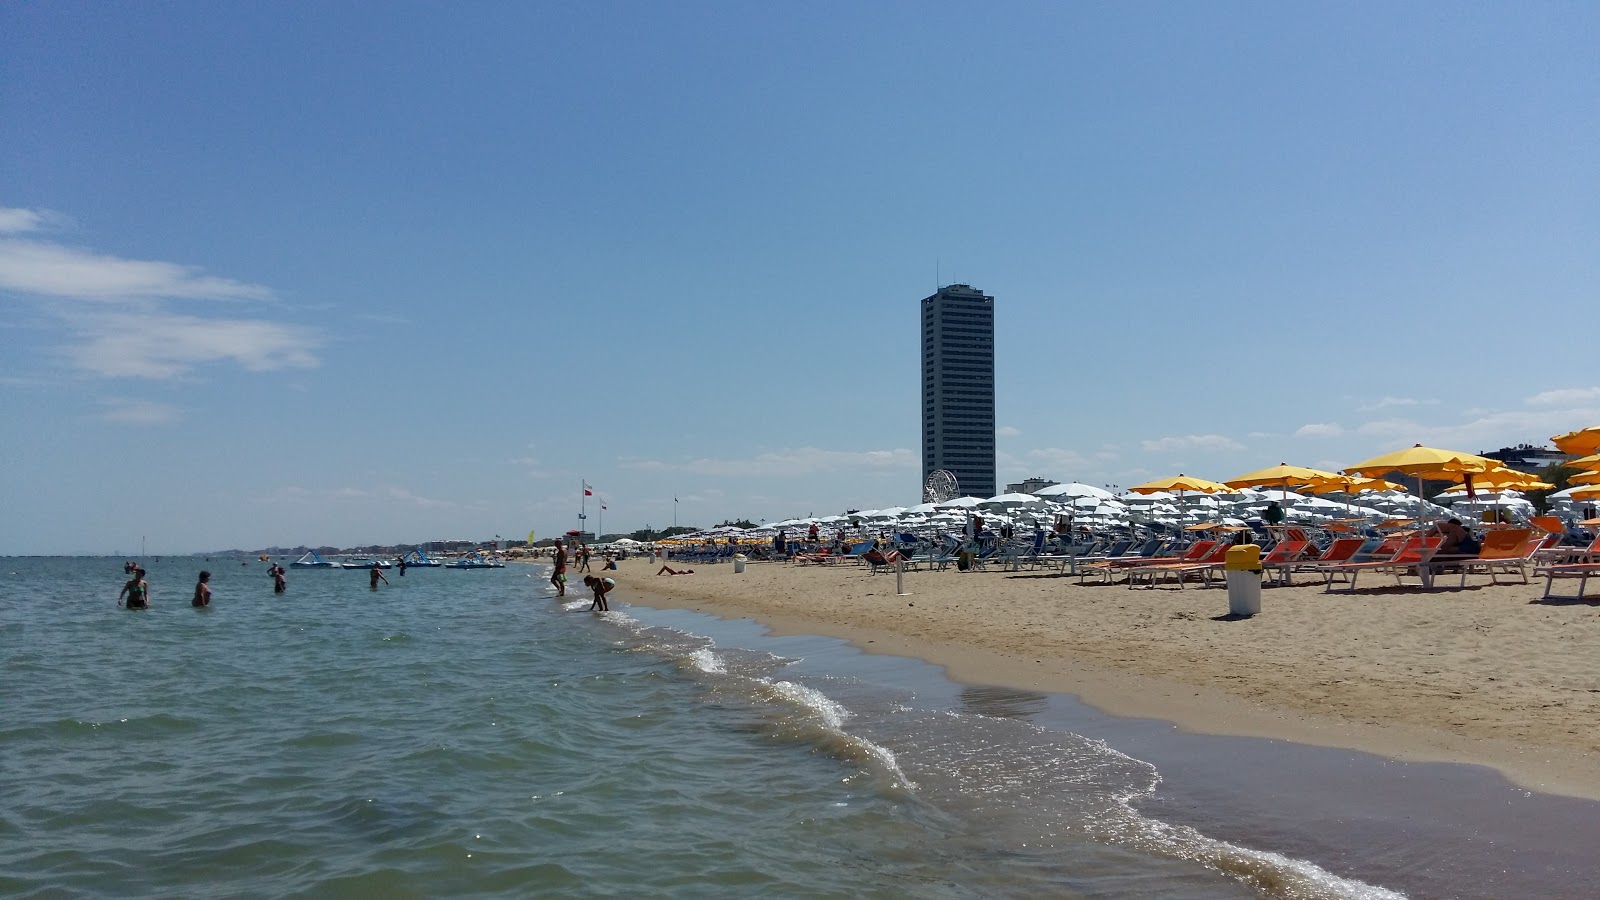 Cesenatico Özgür Plajı'in fotoğrafı geniş plaj ile birlikte